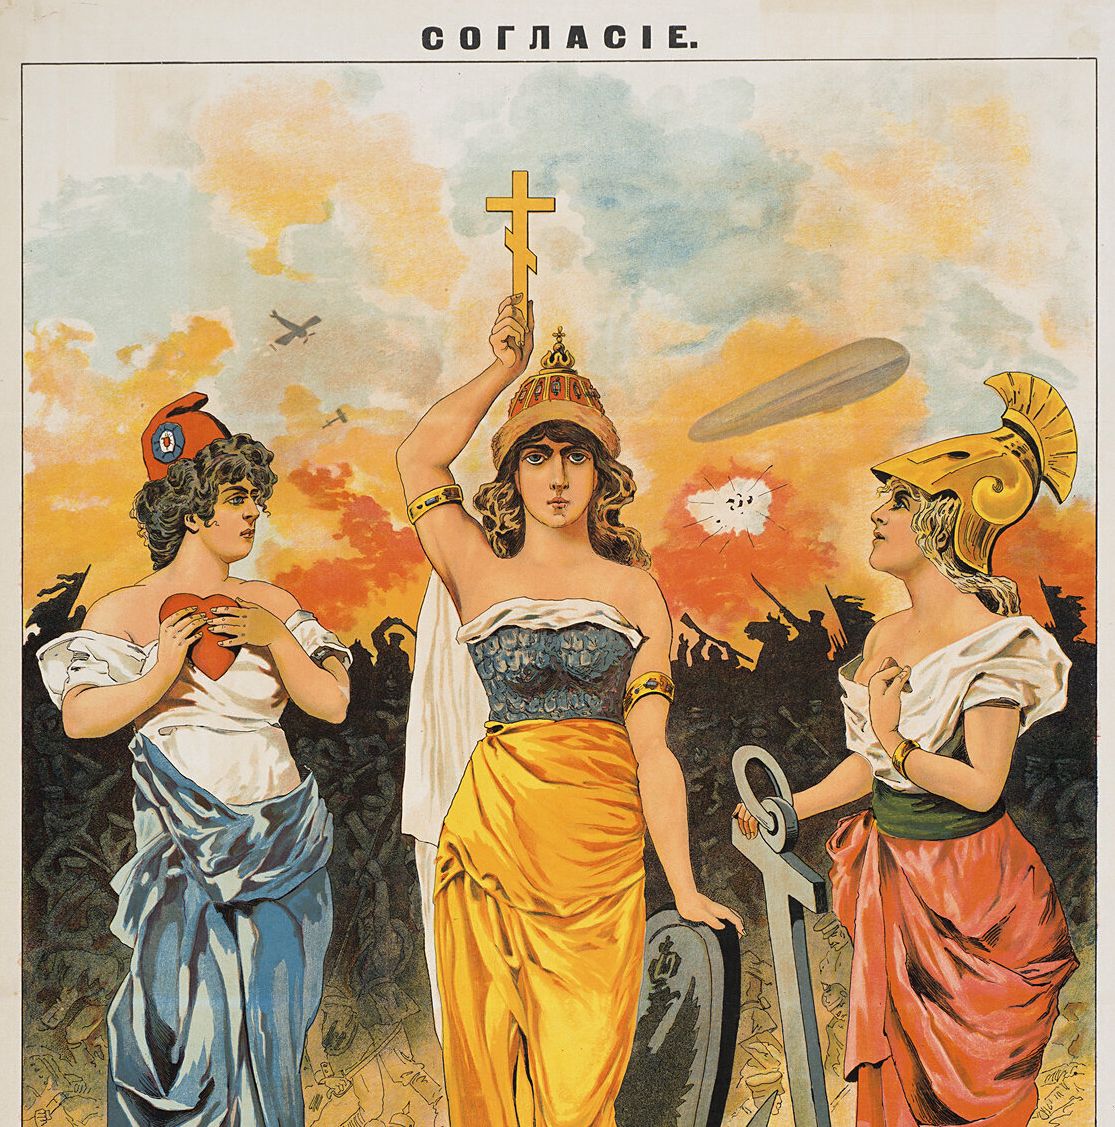 Ρωσική αφίσα του 1914, στην άνω επιγραφή της οποίας αναγράφεται ο όρος "συμφωνία". Οι αβέβαιες Britannia (δεξιά) και Marianne (αριστερά) περιμένουν την αποφασισμένη Μητέρα Ρωσία (κέντρο), προκειμένου να τις οδηγήσει στον επερχόμενο πόλεμο.